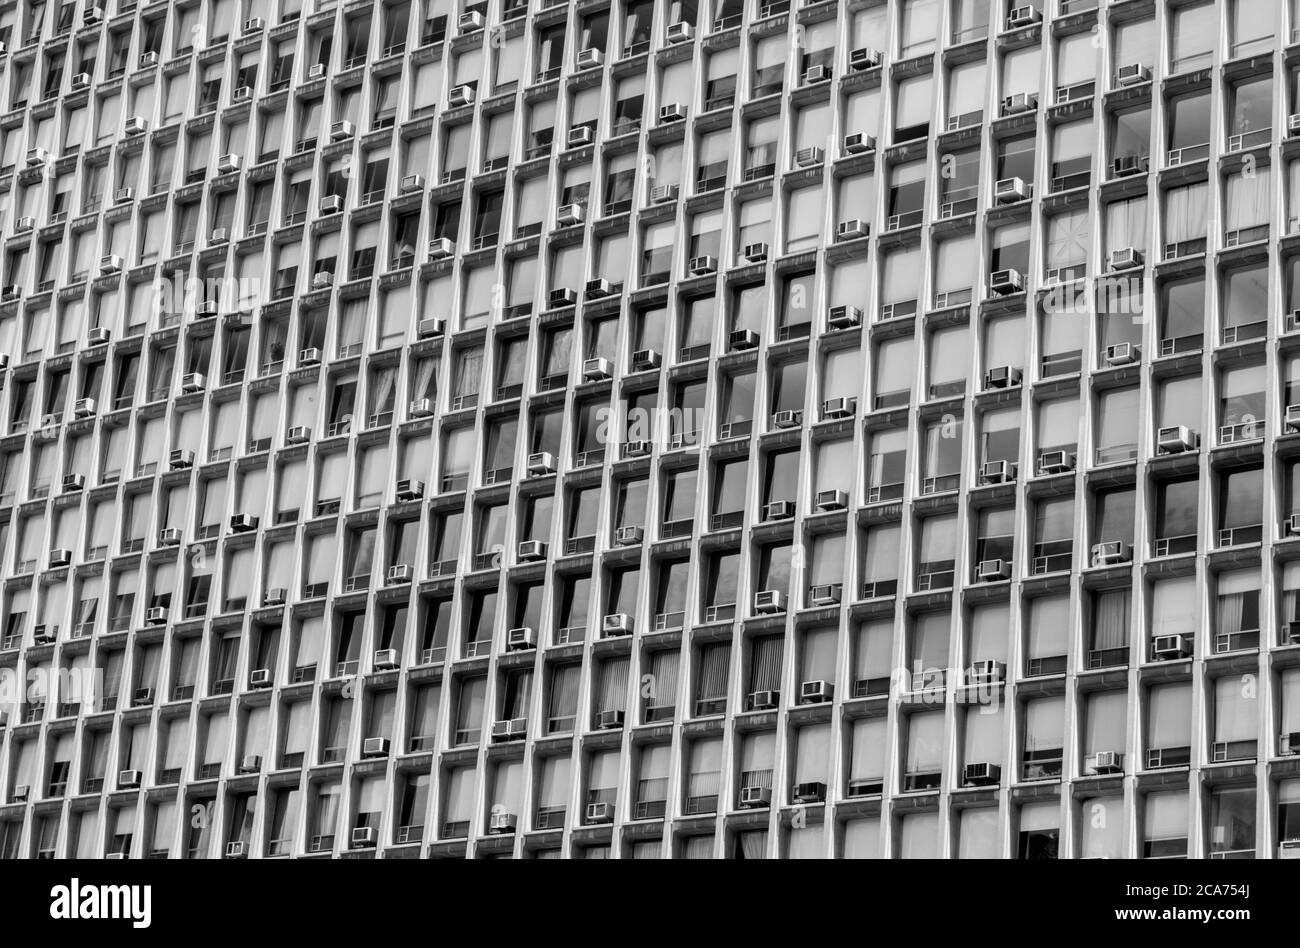 Un immeuble New-yorkais imposant - chaque fenêtre contient une unité de climatisation en noir et blanc (noir et blanc) Banque D'Images